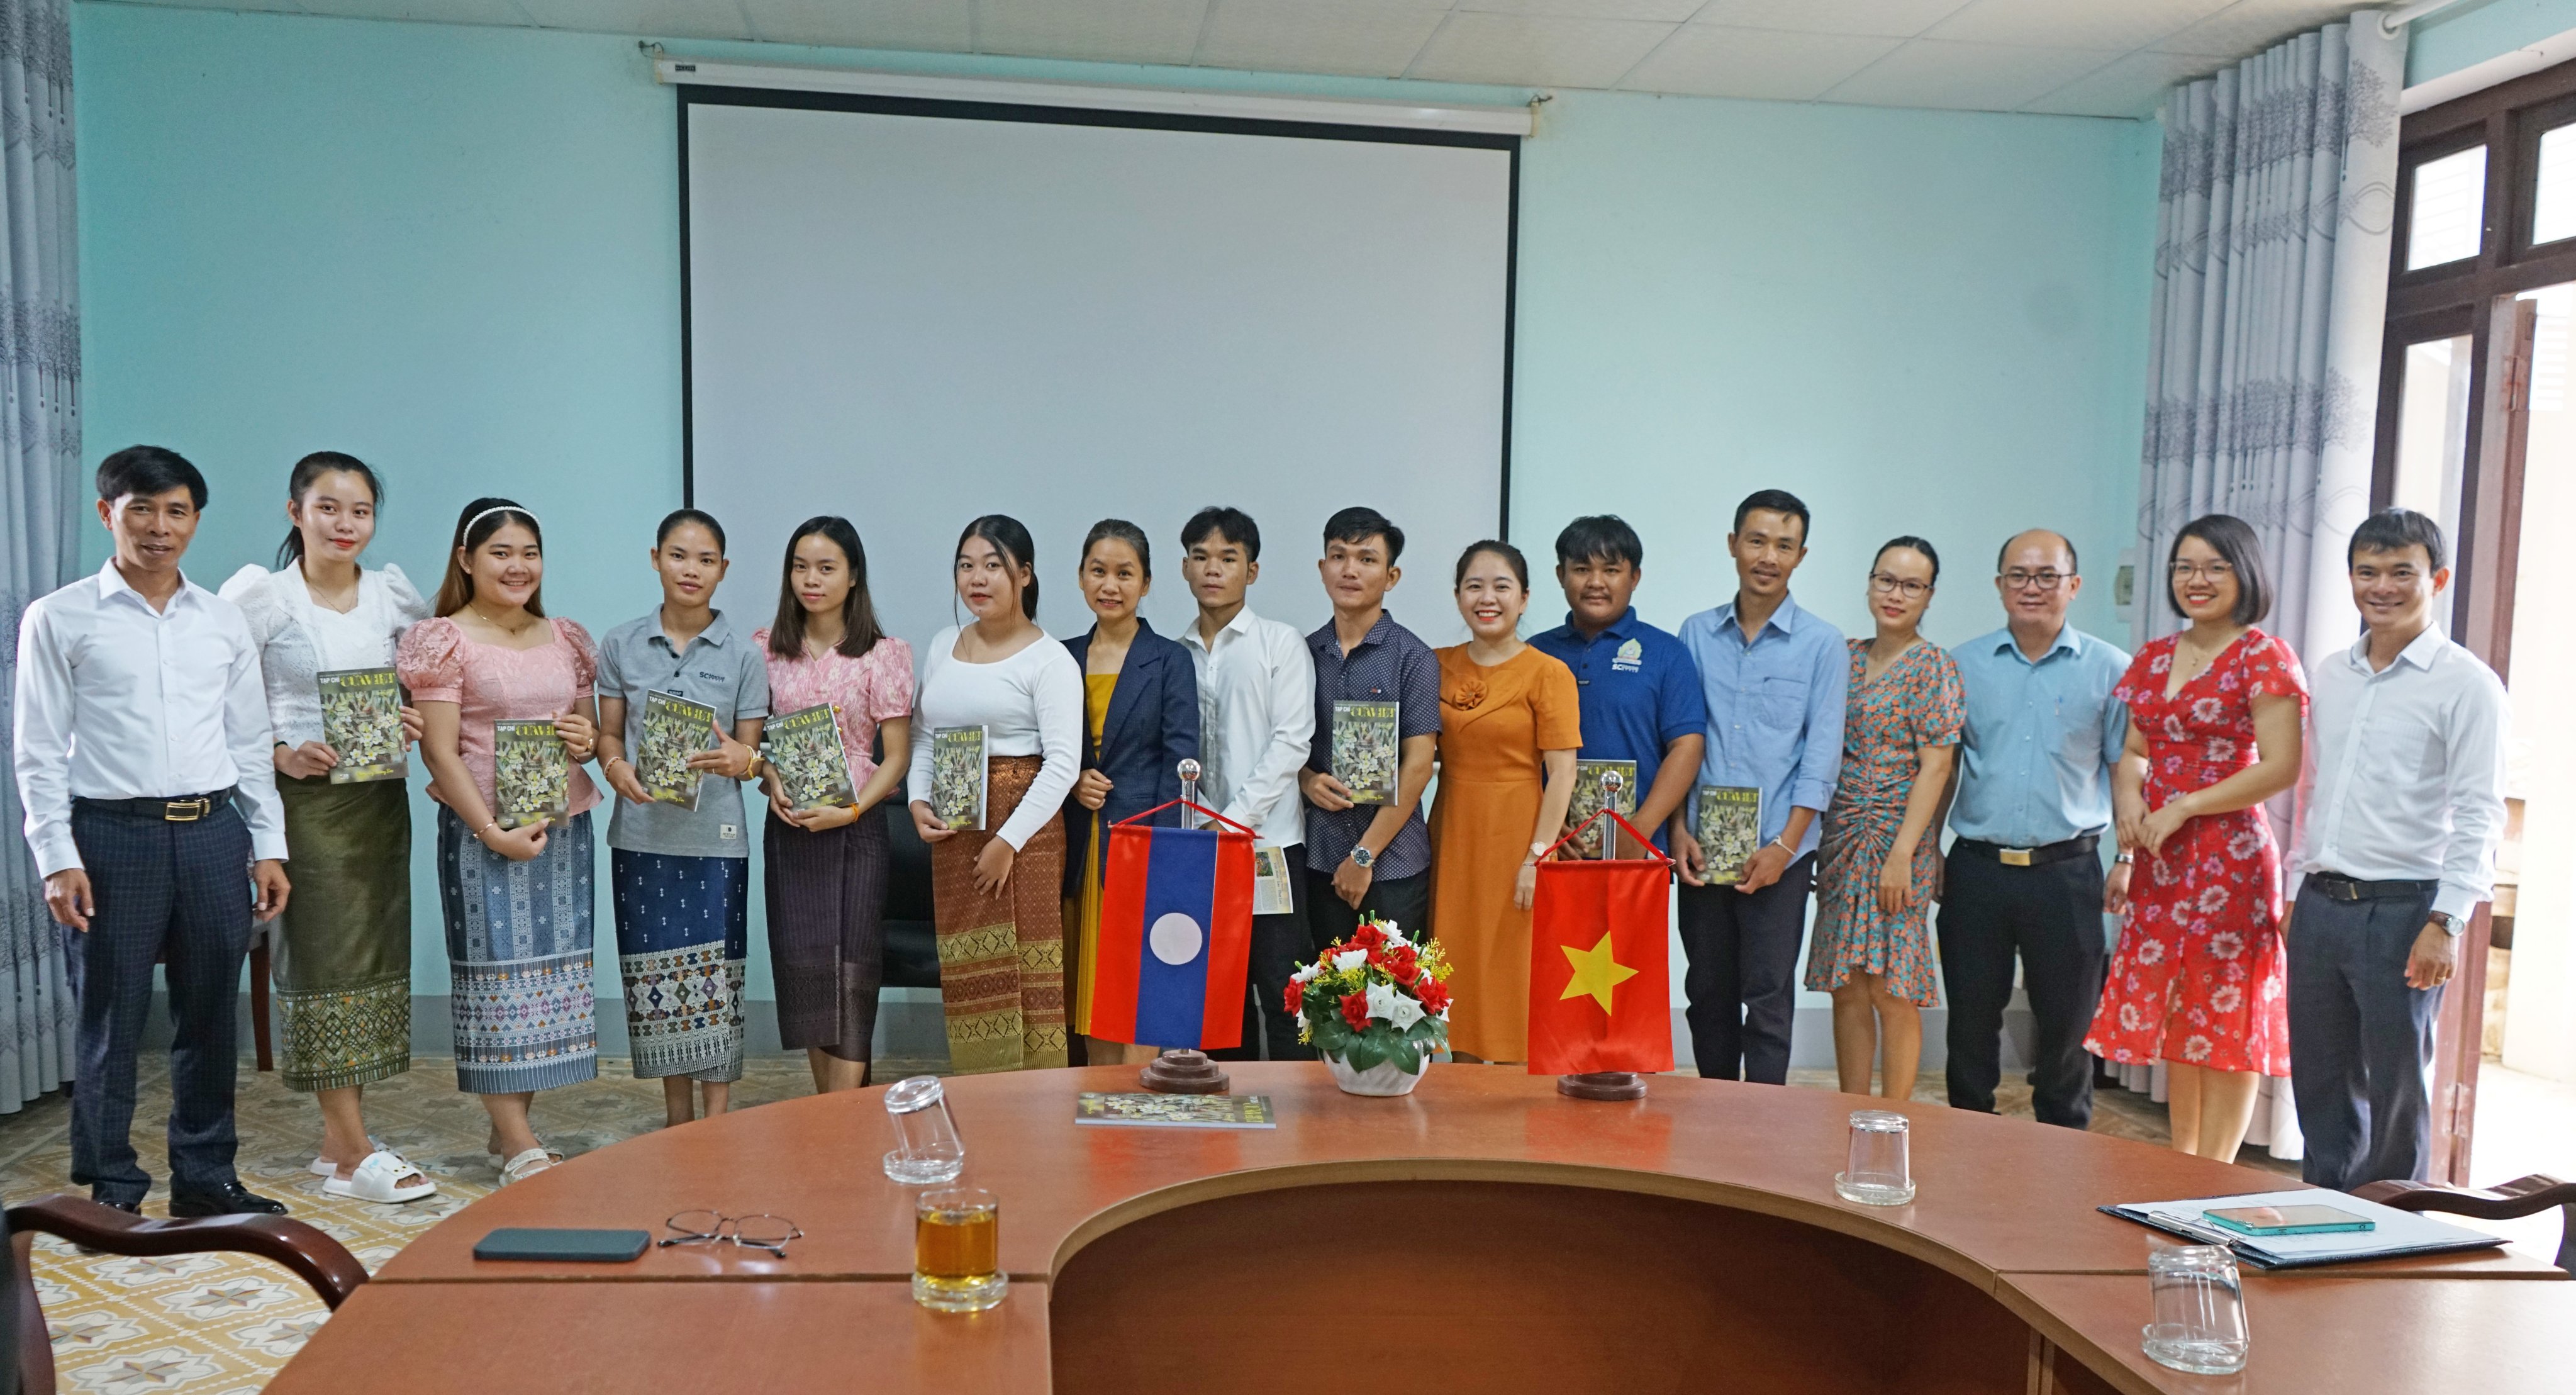 Lãnh đạo Tạp chí Cửa Việt đến thăm, trao tặng Tạp chí Cửa Việt và học bổng cho Lưu học sinh Lào tại trường CĐSP Quảng Trị